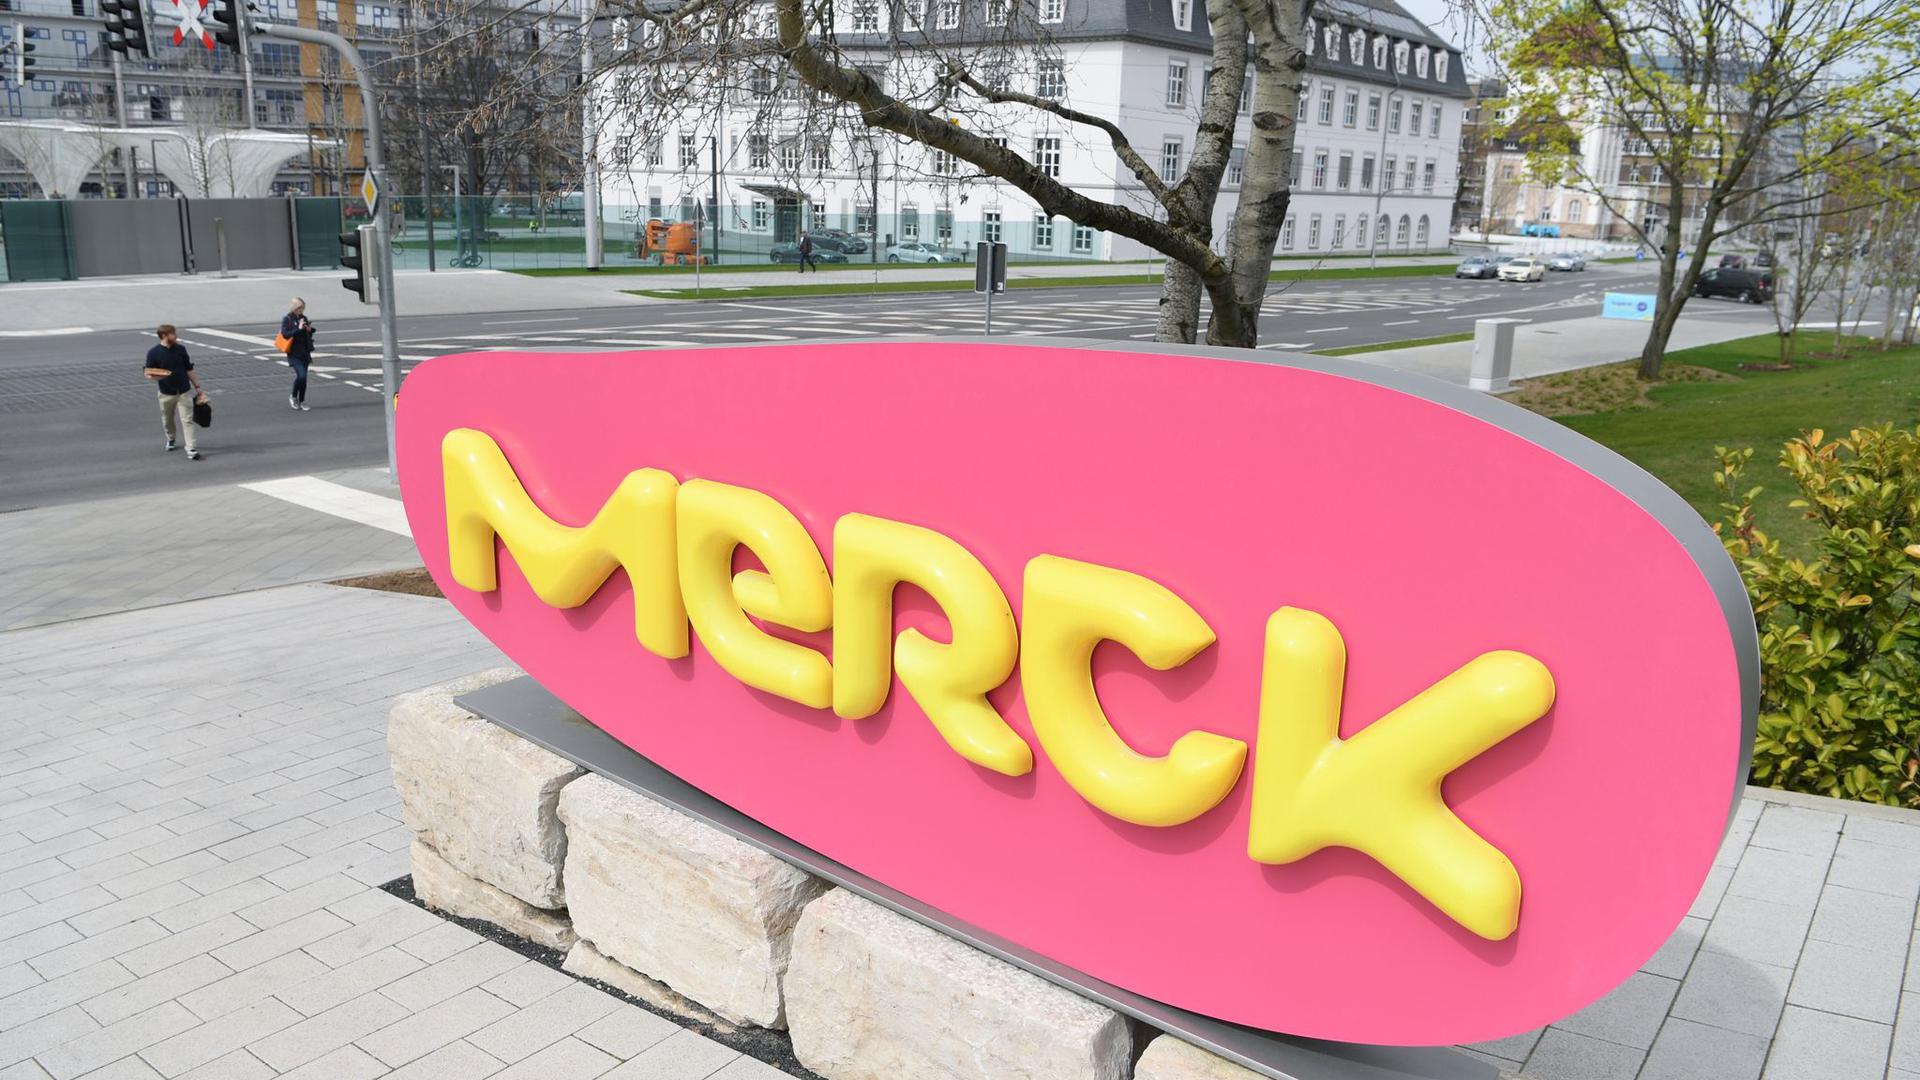 Merck will angesichts des Chipmangels eine neue Plattform zur Datenanalyse schaffen.